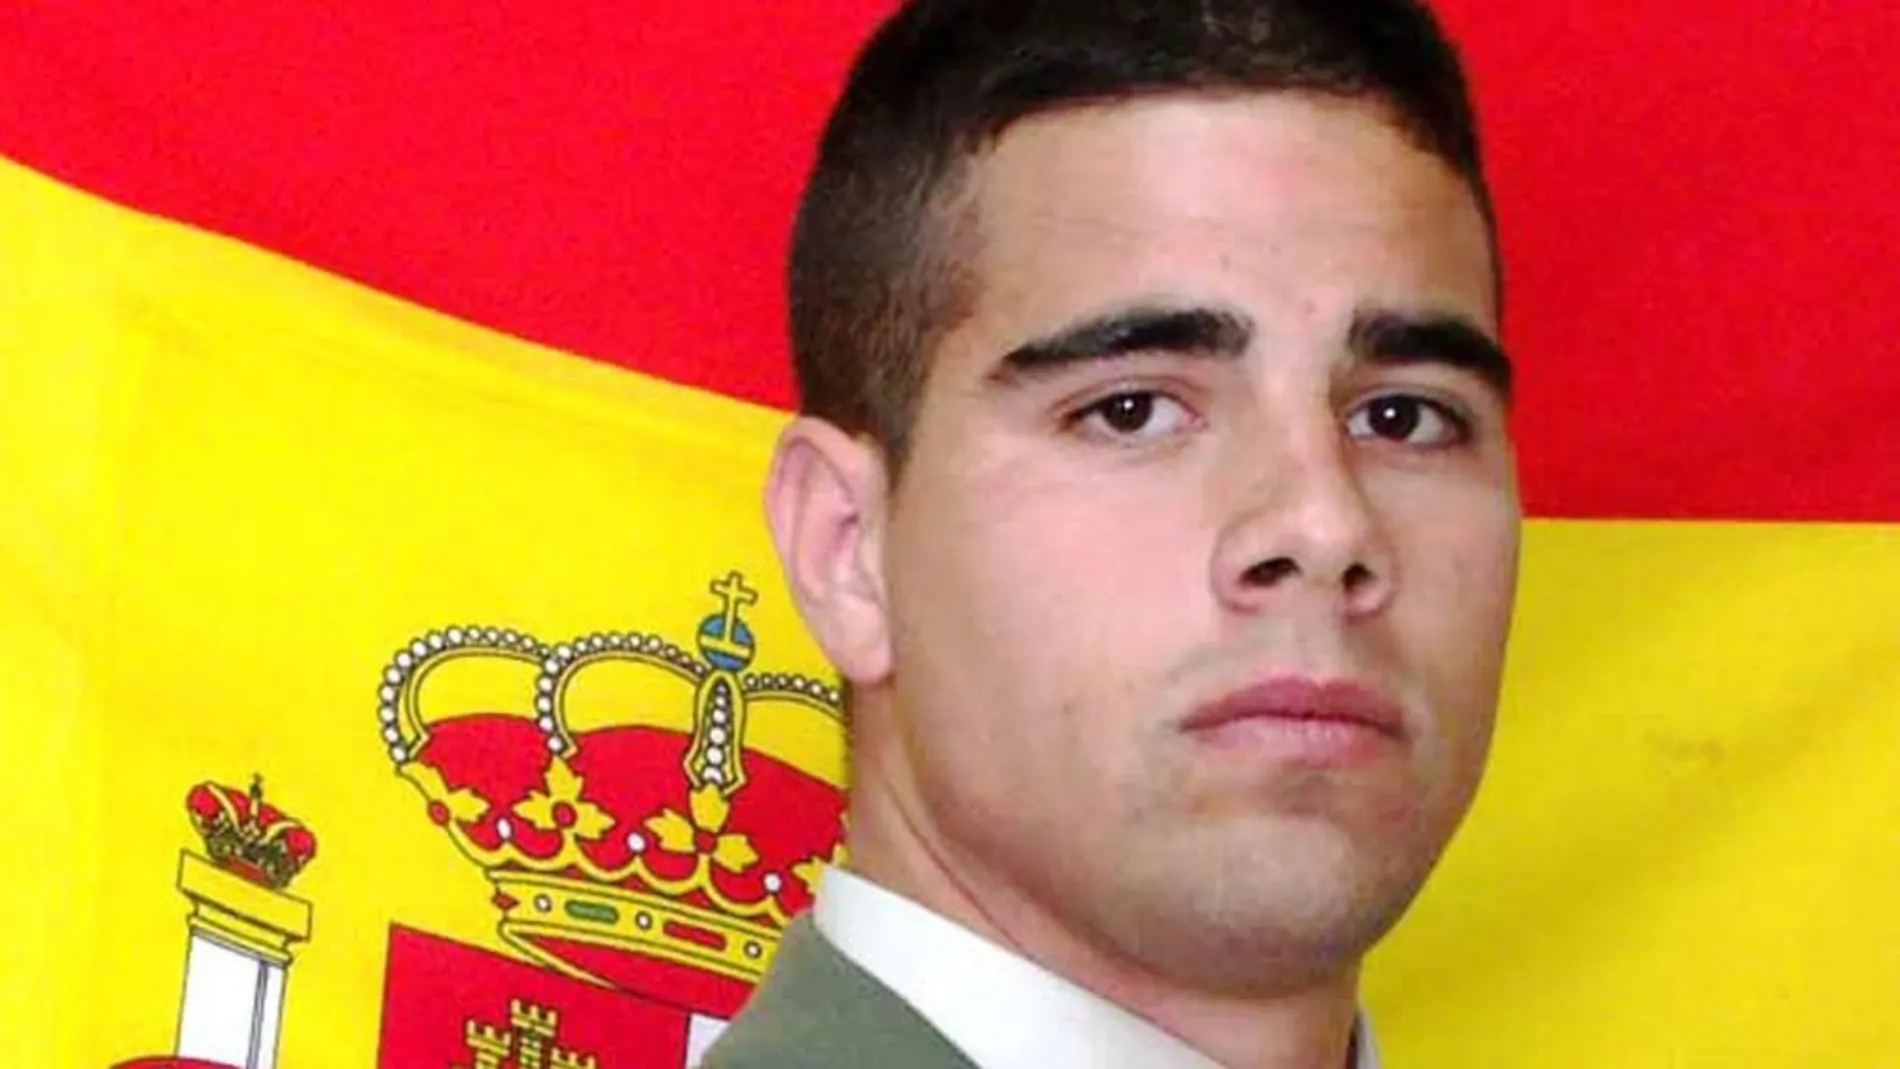 El soldado español Carlos Martínez Gutiérrez, de 25 años